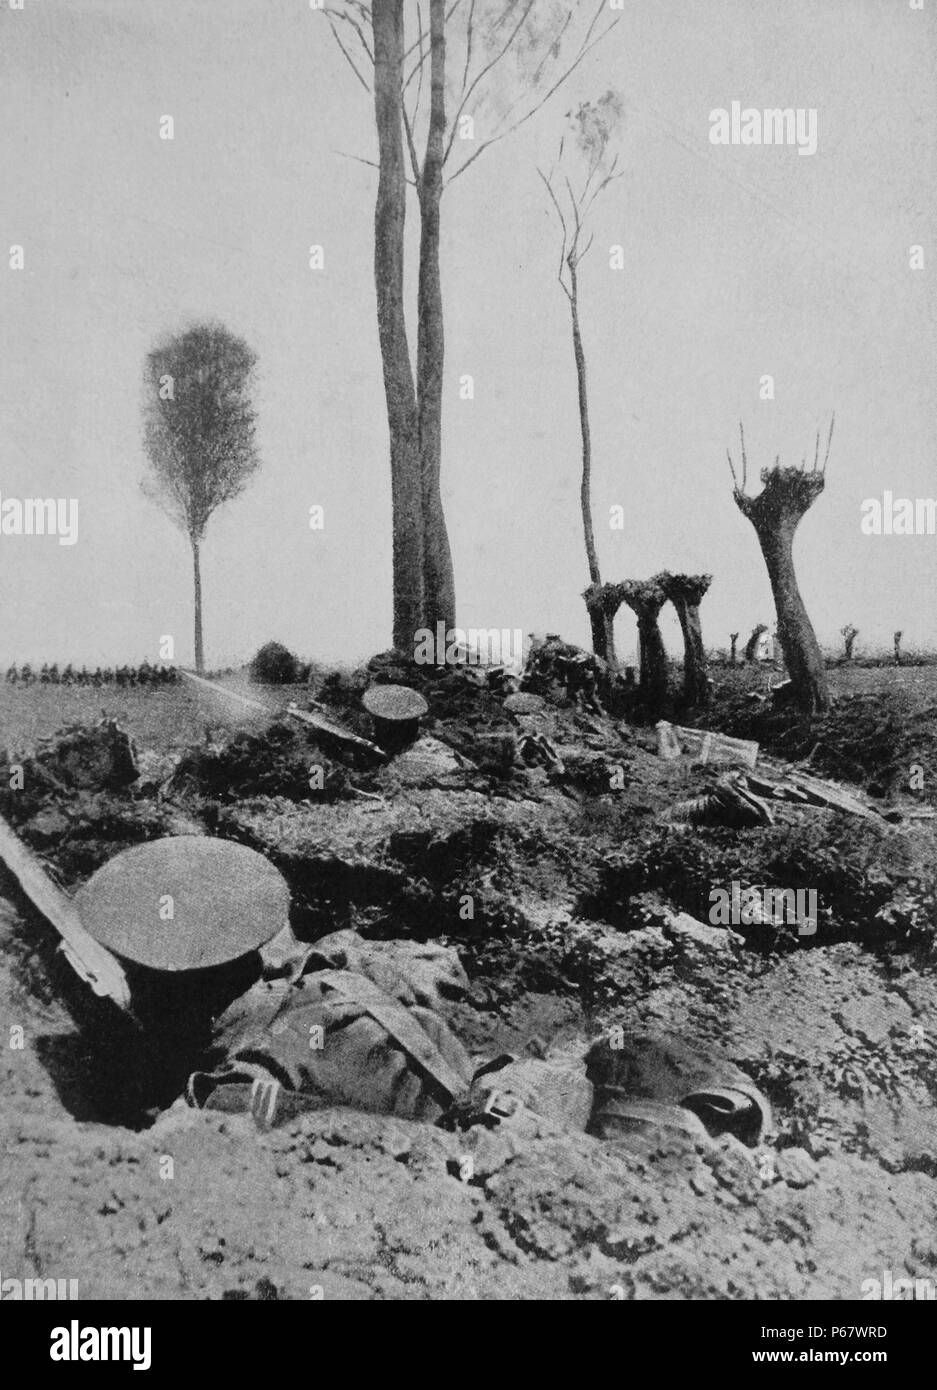 La fanteria britannica rifugio nelle trincee durante la Seconda battaglia di Ypres, che continuò fino al 25 maggio 1915s, nella prima guerra mondiale Foto Stock